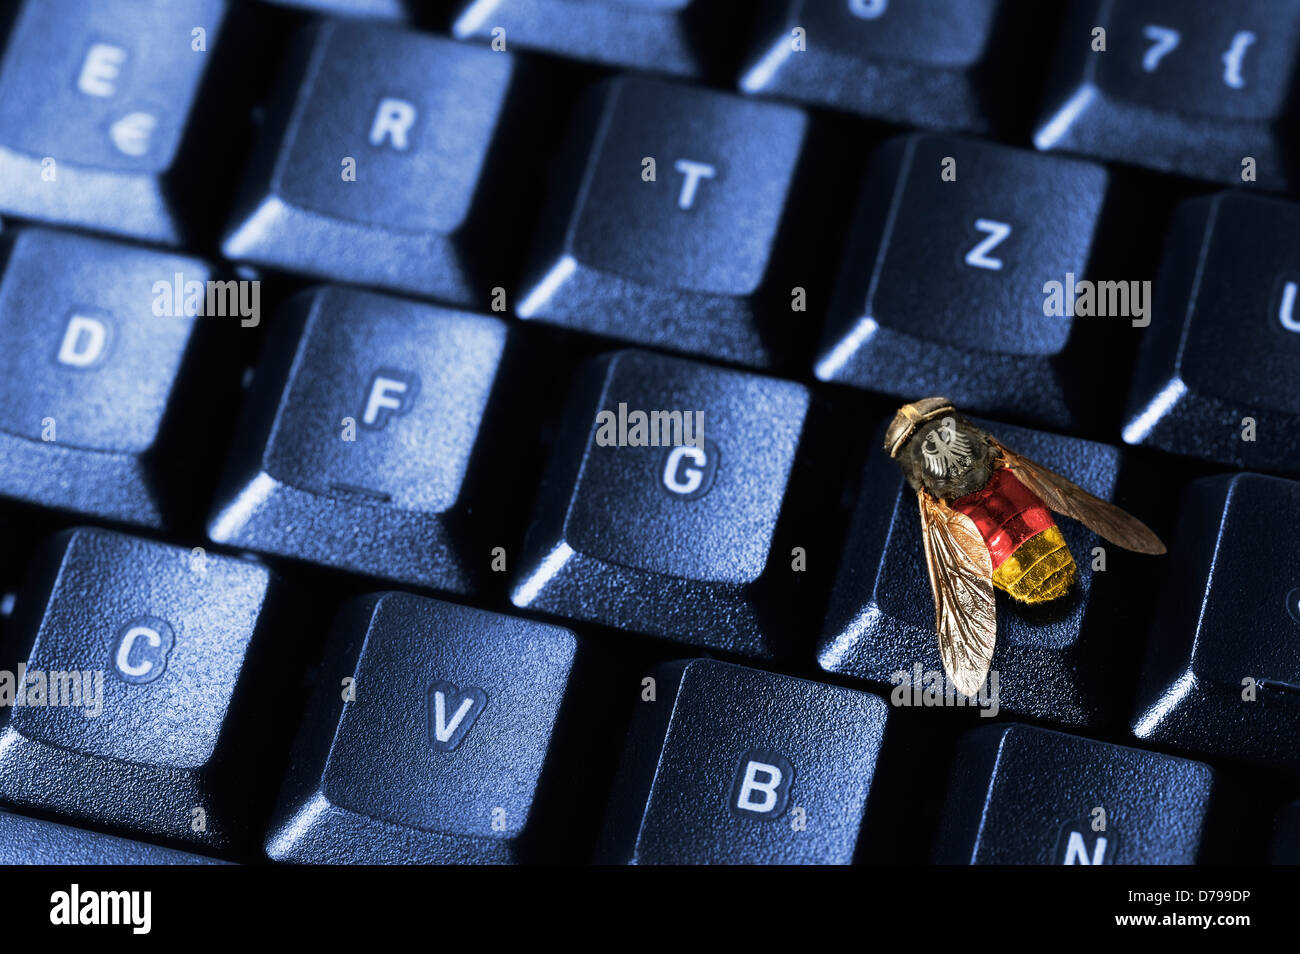 Fly sur clavier d'ordinateur, photo symbolique de Troie fédéral , Computertastatur Symbolfoto Fliege auf, Bundestrojaner Banque D'Images